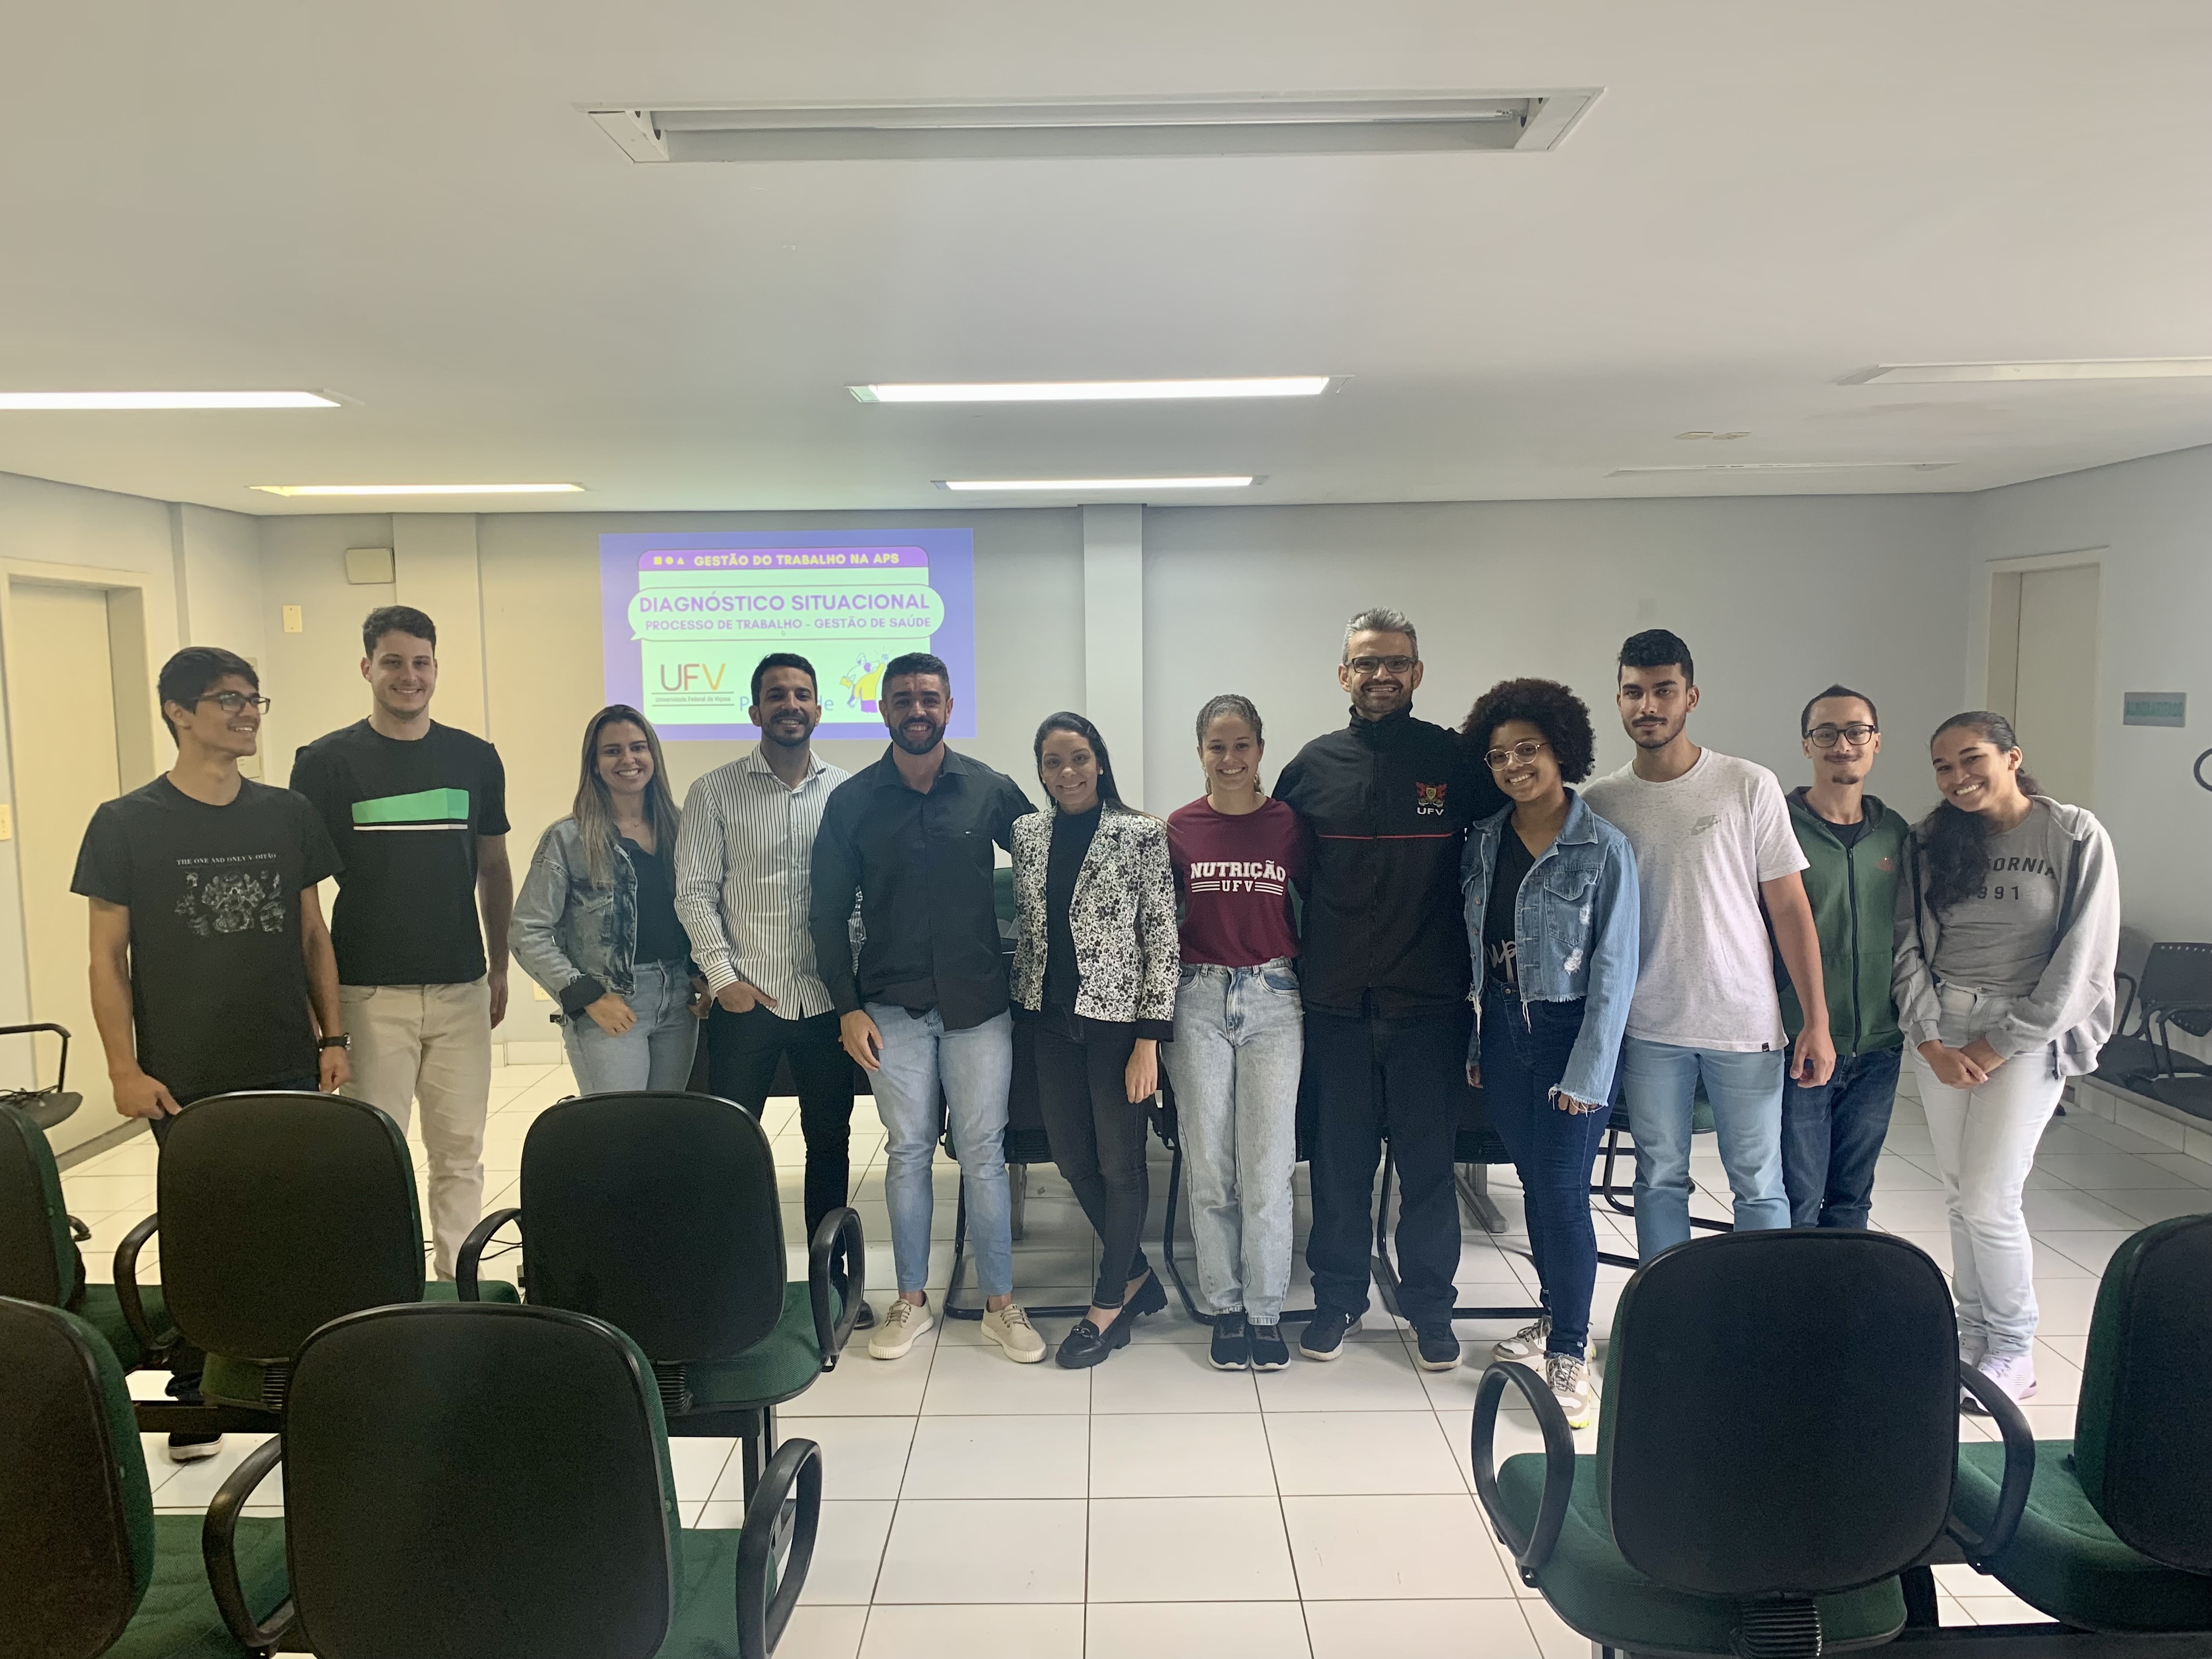 Federal University of Viçosa – News